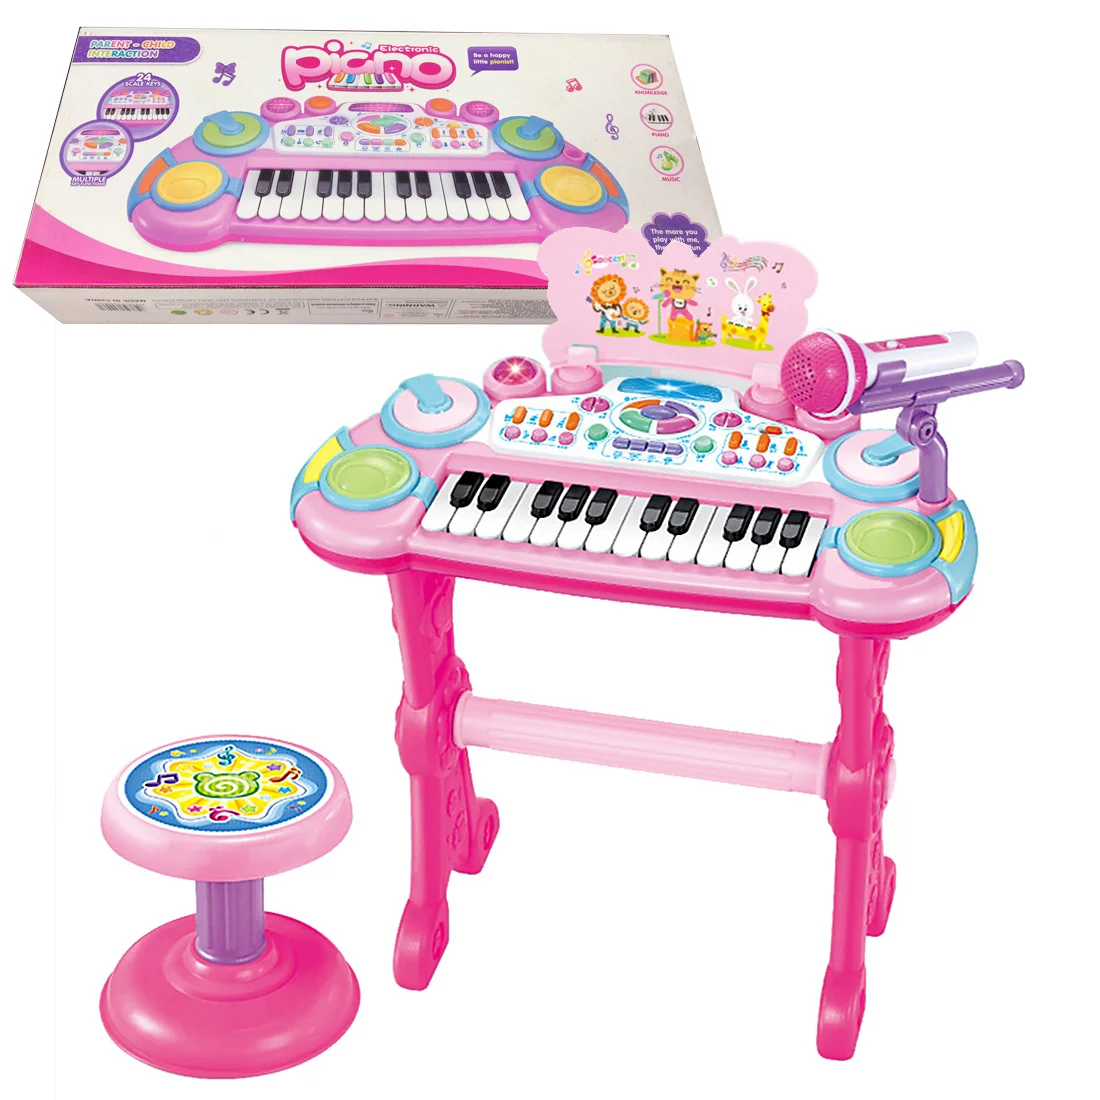 24 клавиши дети электронная клавиатура Playset многофункциональные развивающие игрушки с микрофоном-розовый